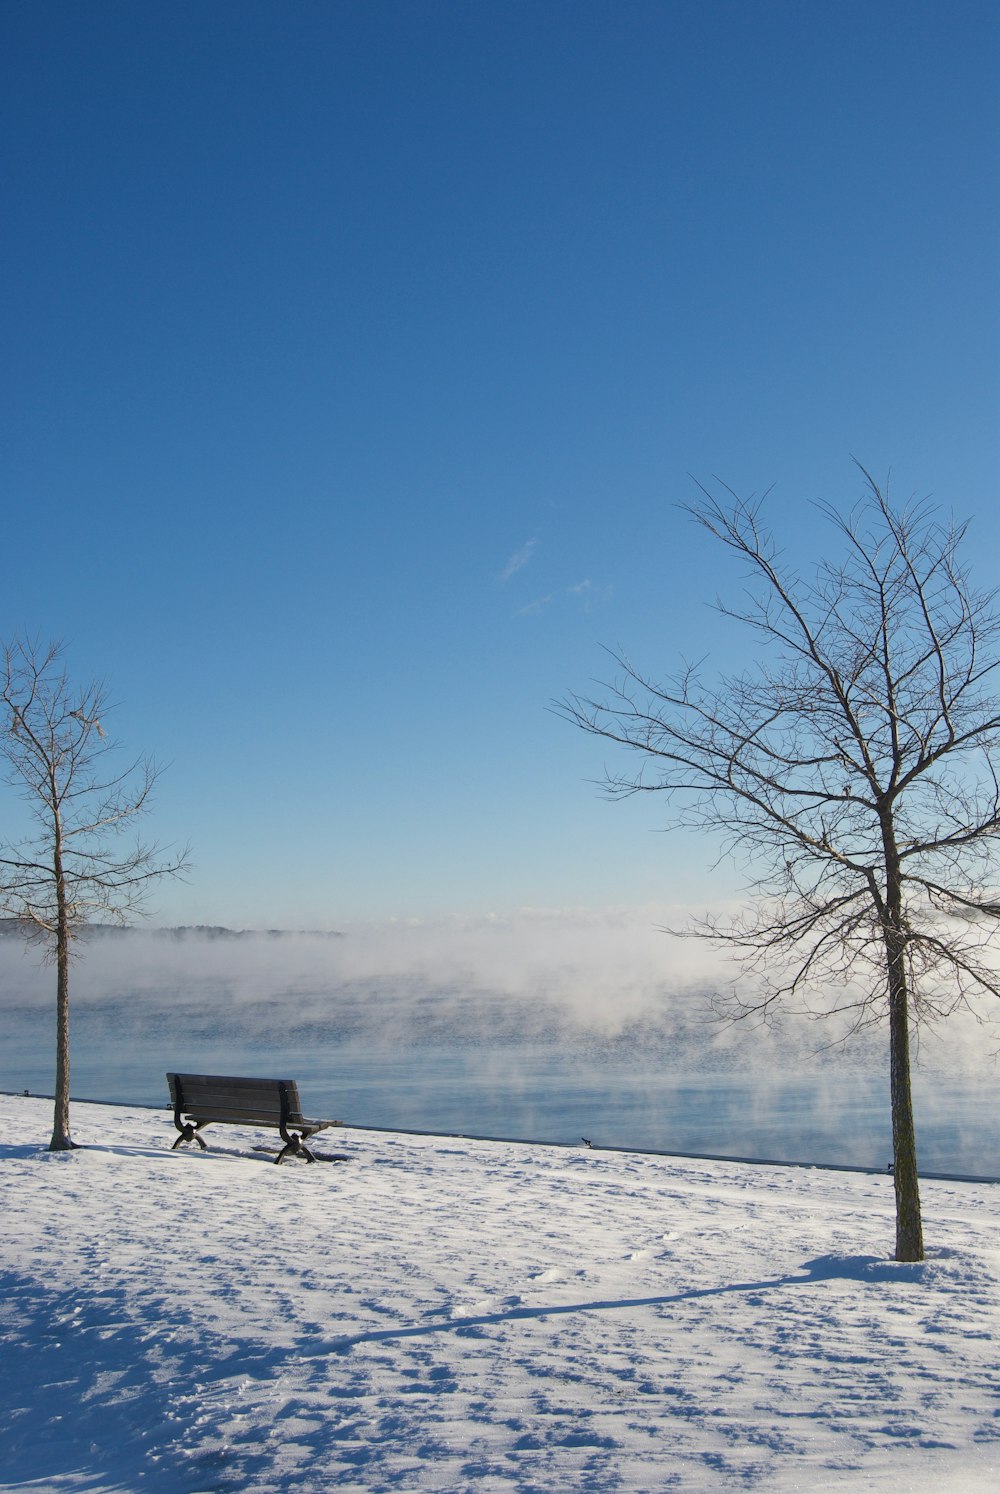 Un banco sentado en la nieve junto a dos árboles